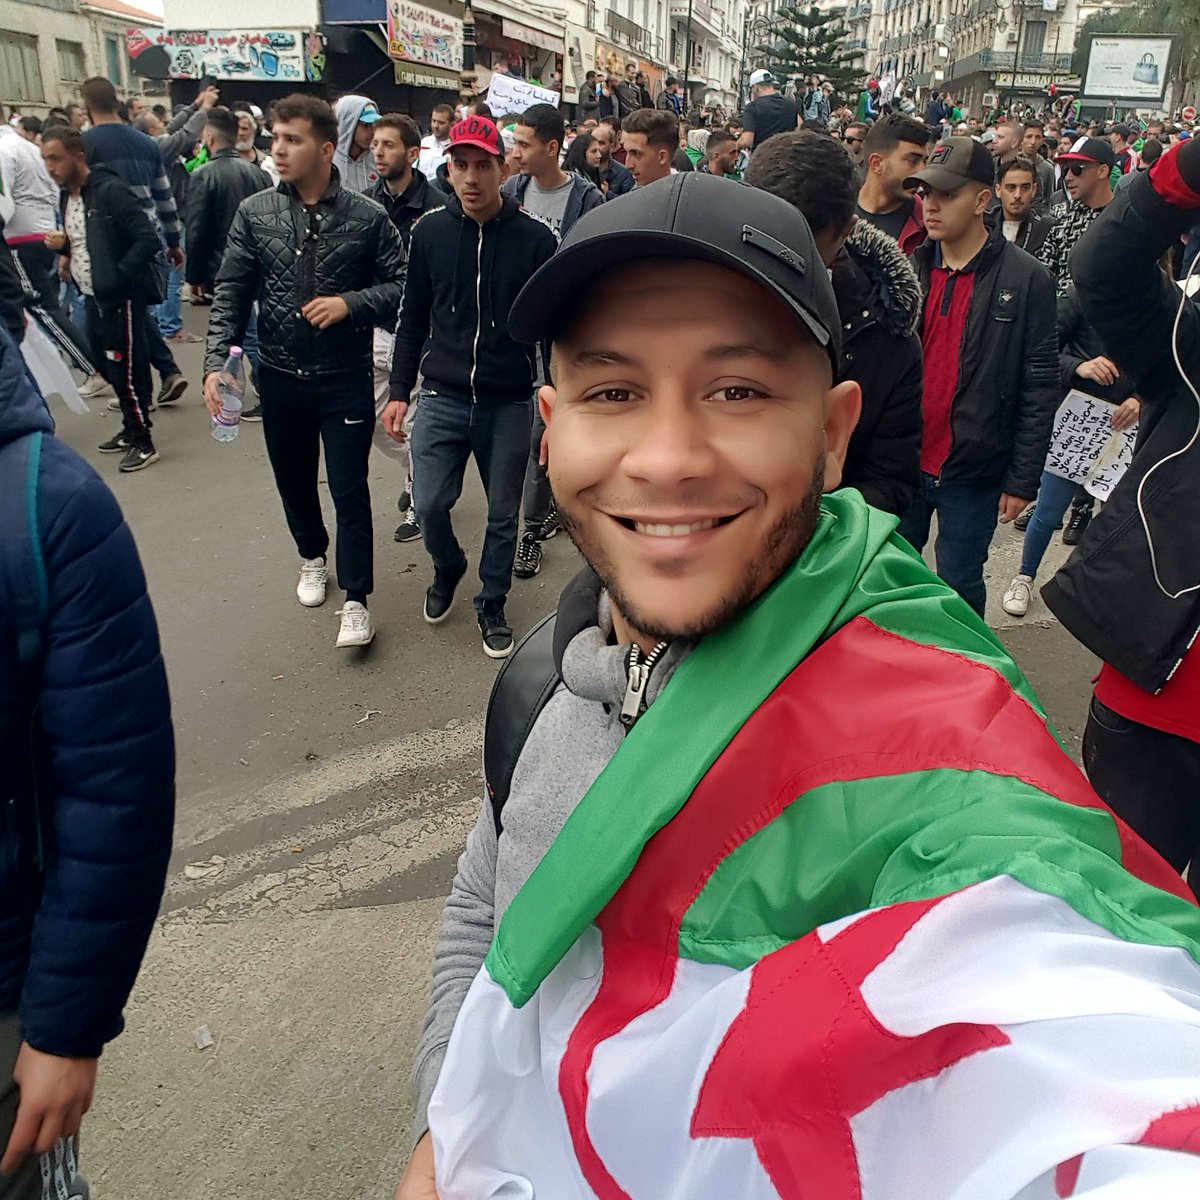 パリでアルジェリア系フランス人が性的マイノリティを集団で囲って暴力を振るう場面が映し出される Togetter